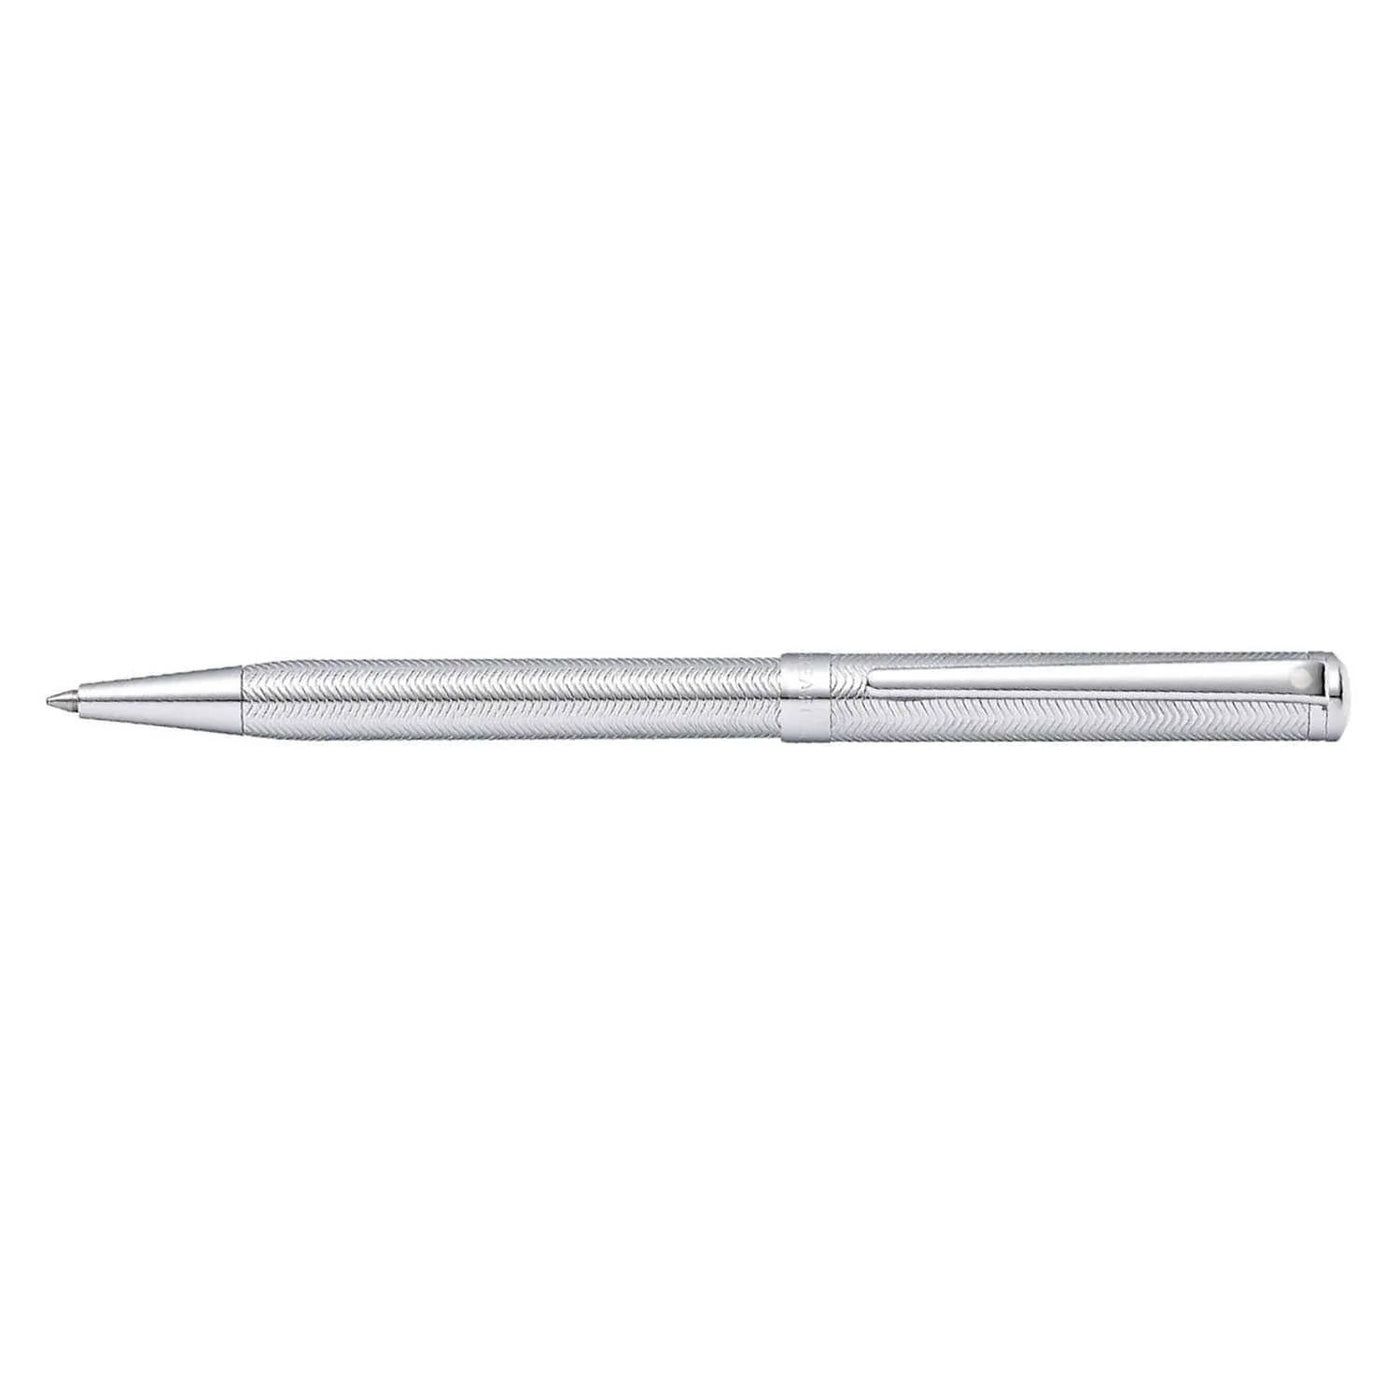 Sheaffer Intensity Ball Pen - Engraved Chrome 3